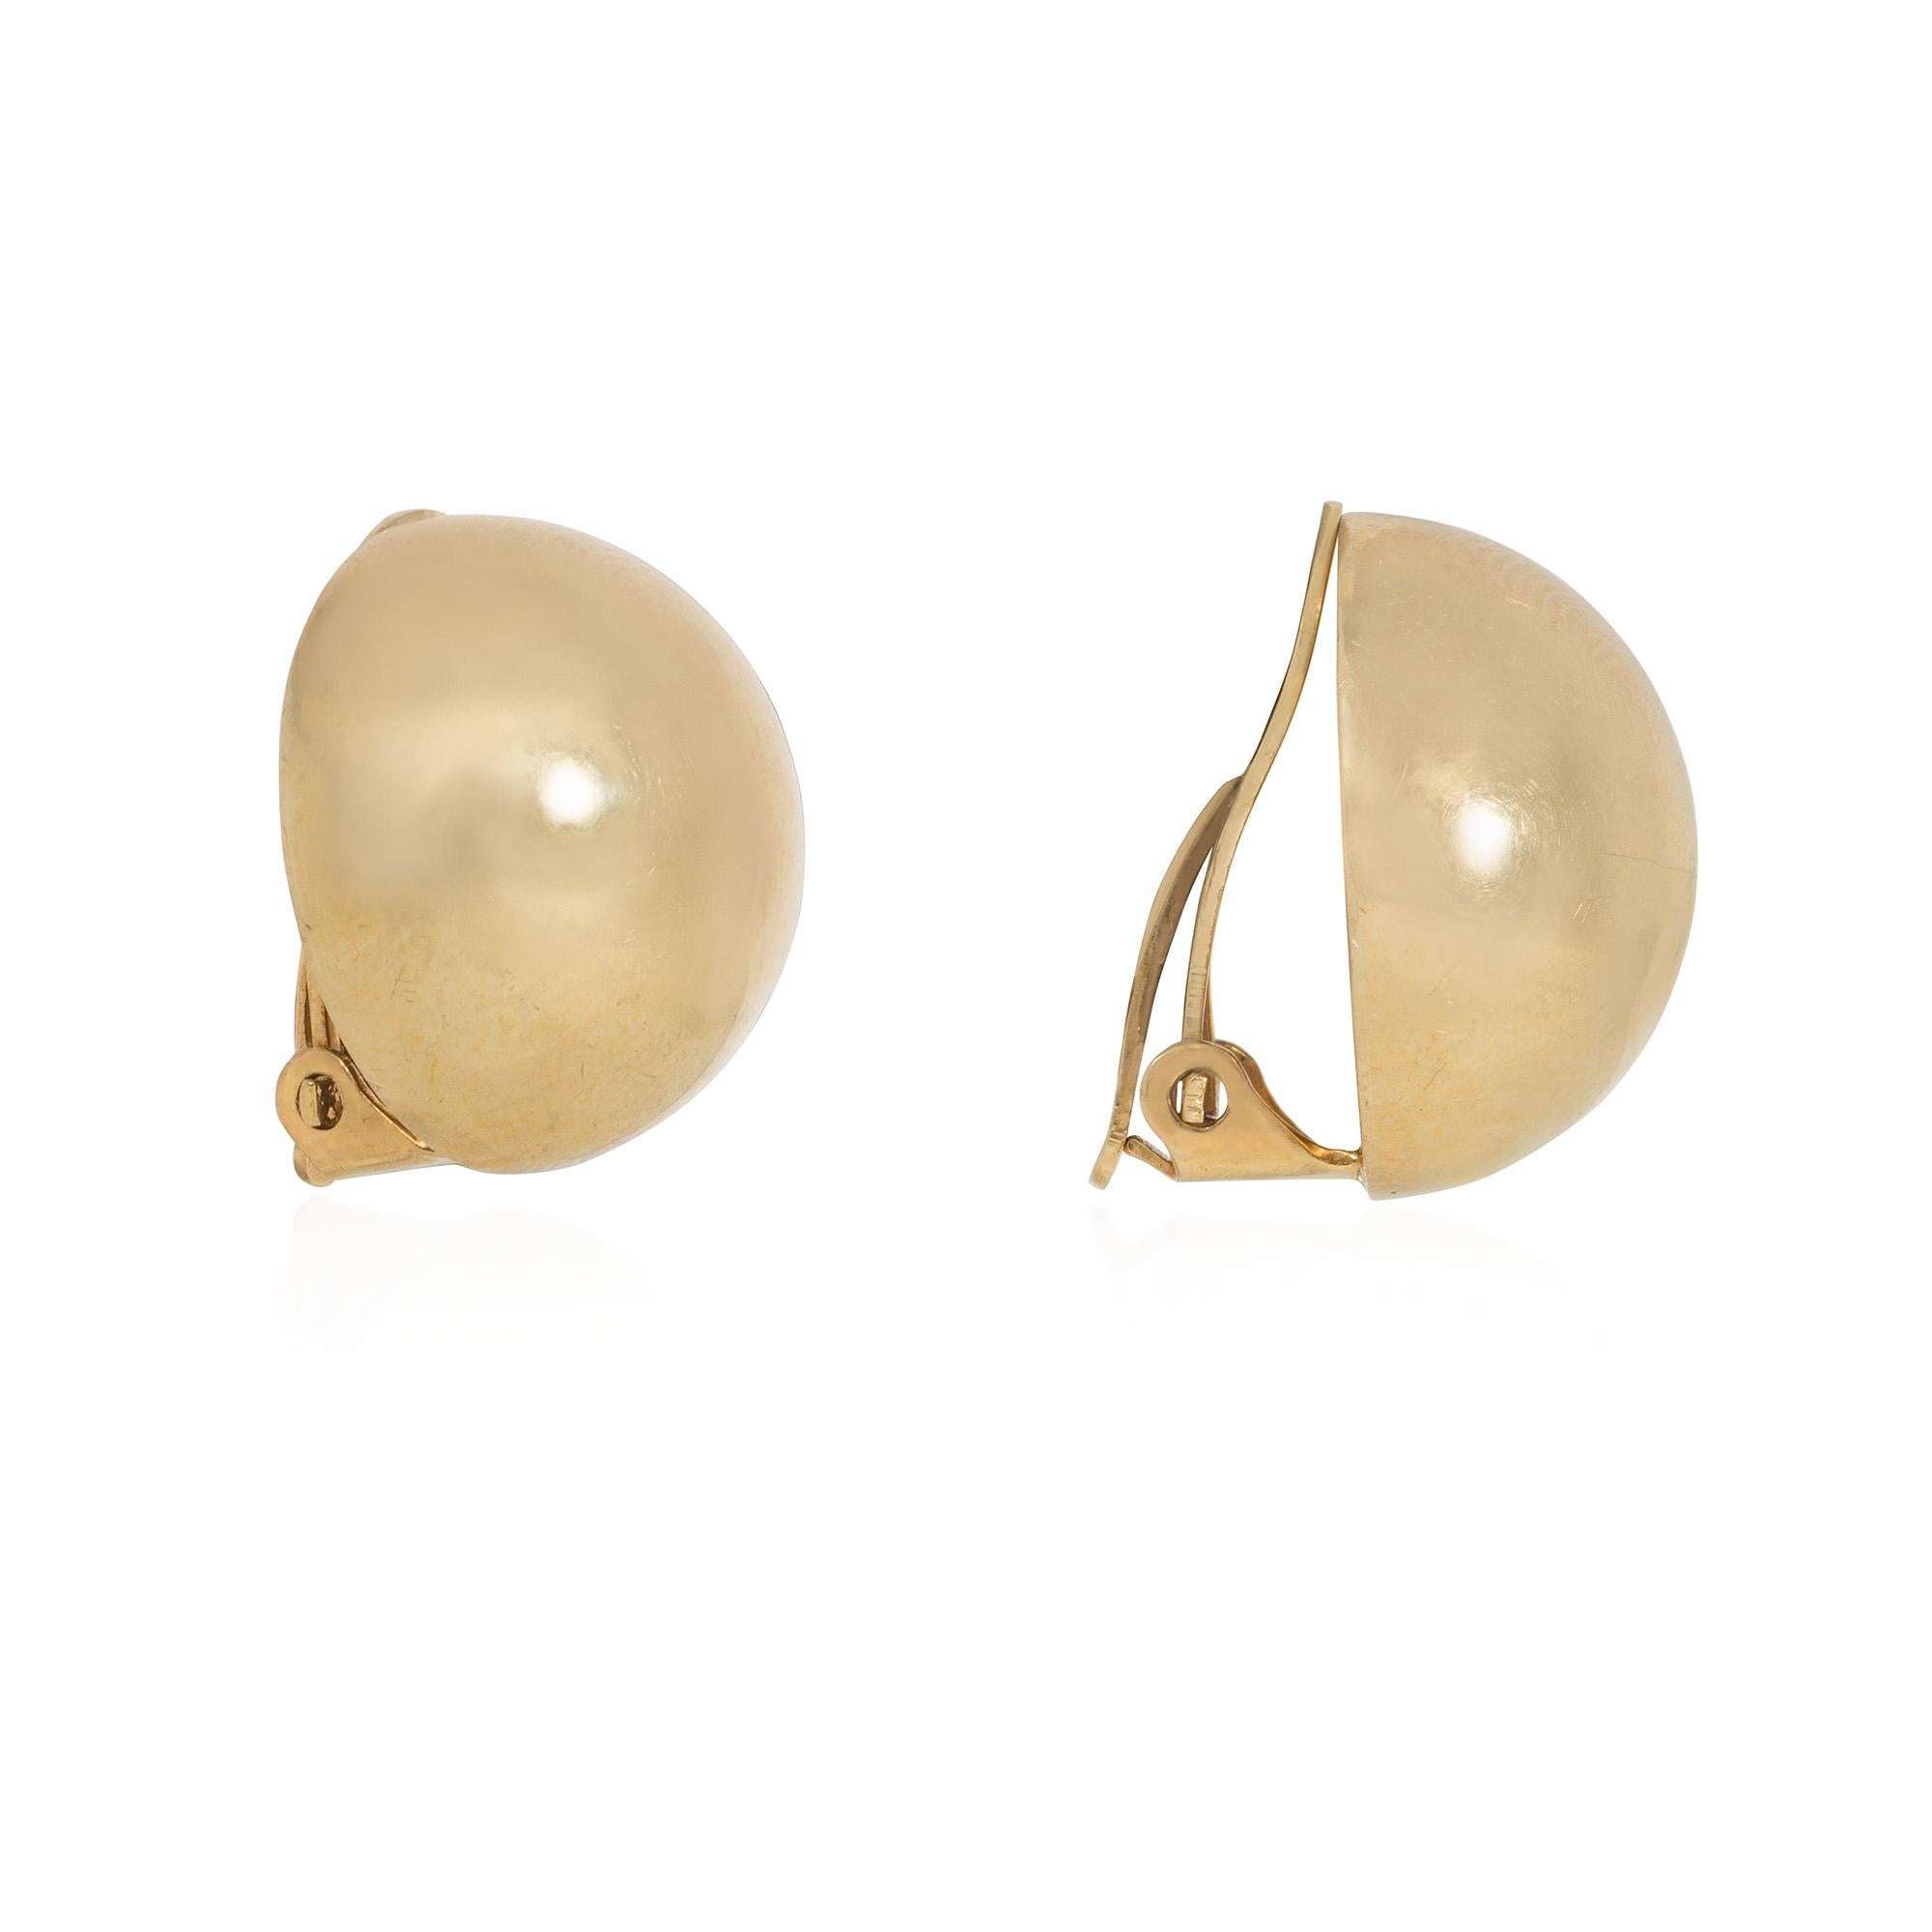 Ein Paar Retro-Goldknopf-Ohrringe mit gewölbtem Design und Clipverschluss, in 14k. Tiffany & Co.  Ein klassischer, maßgeschneiderter Look, der nie aus der Mode kommt!


